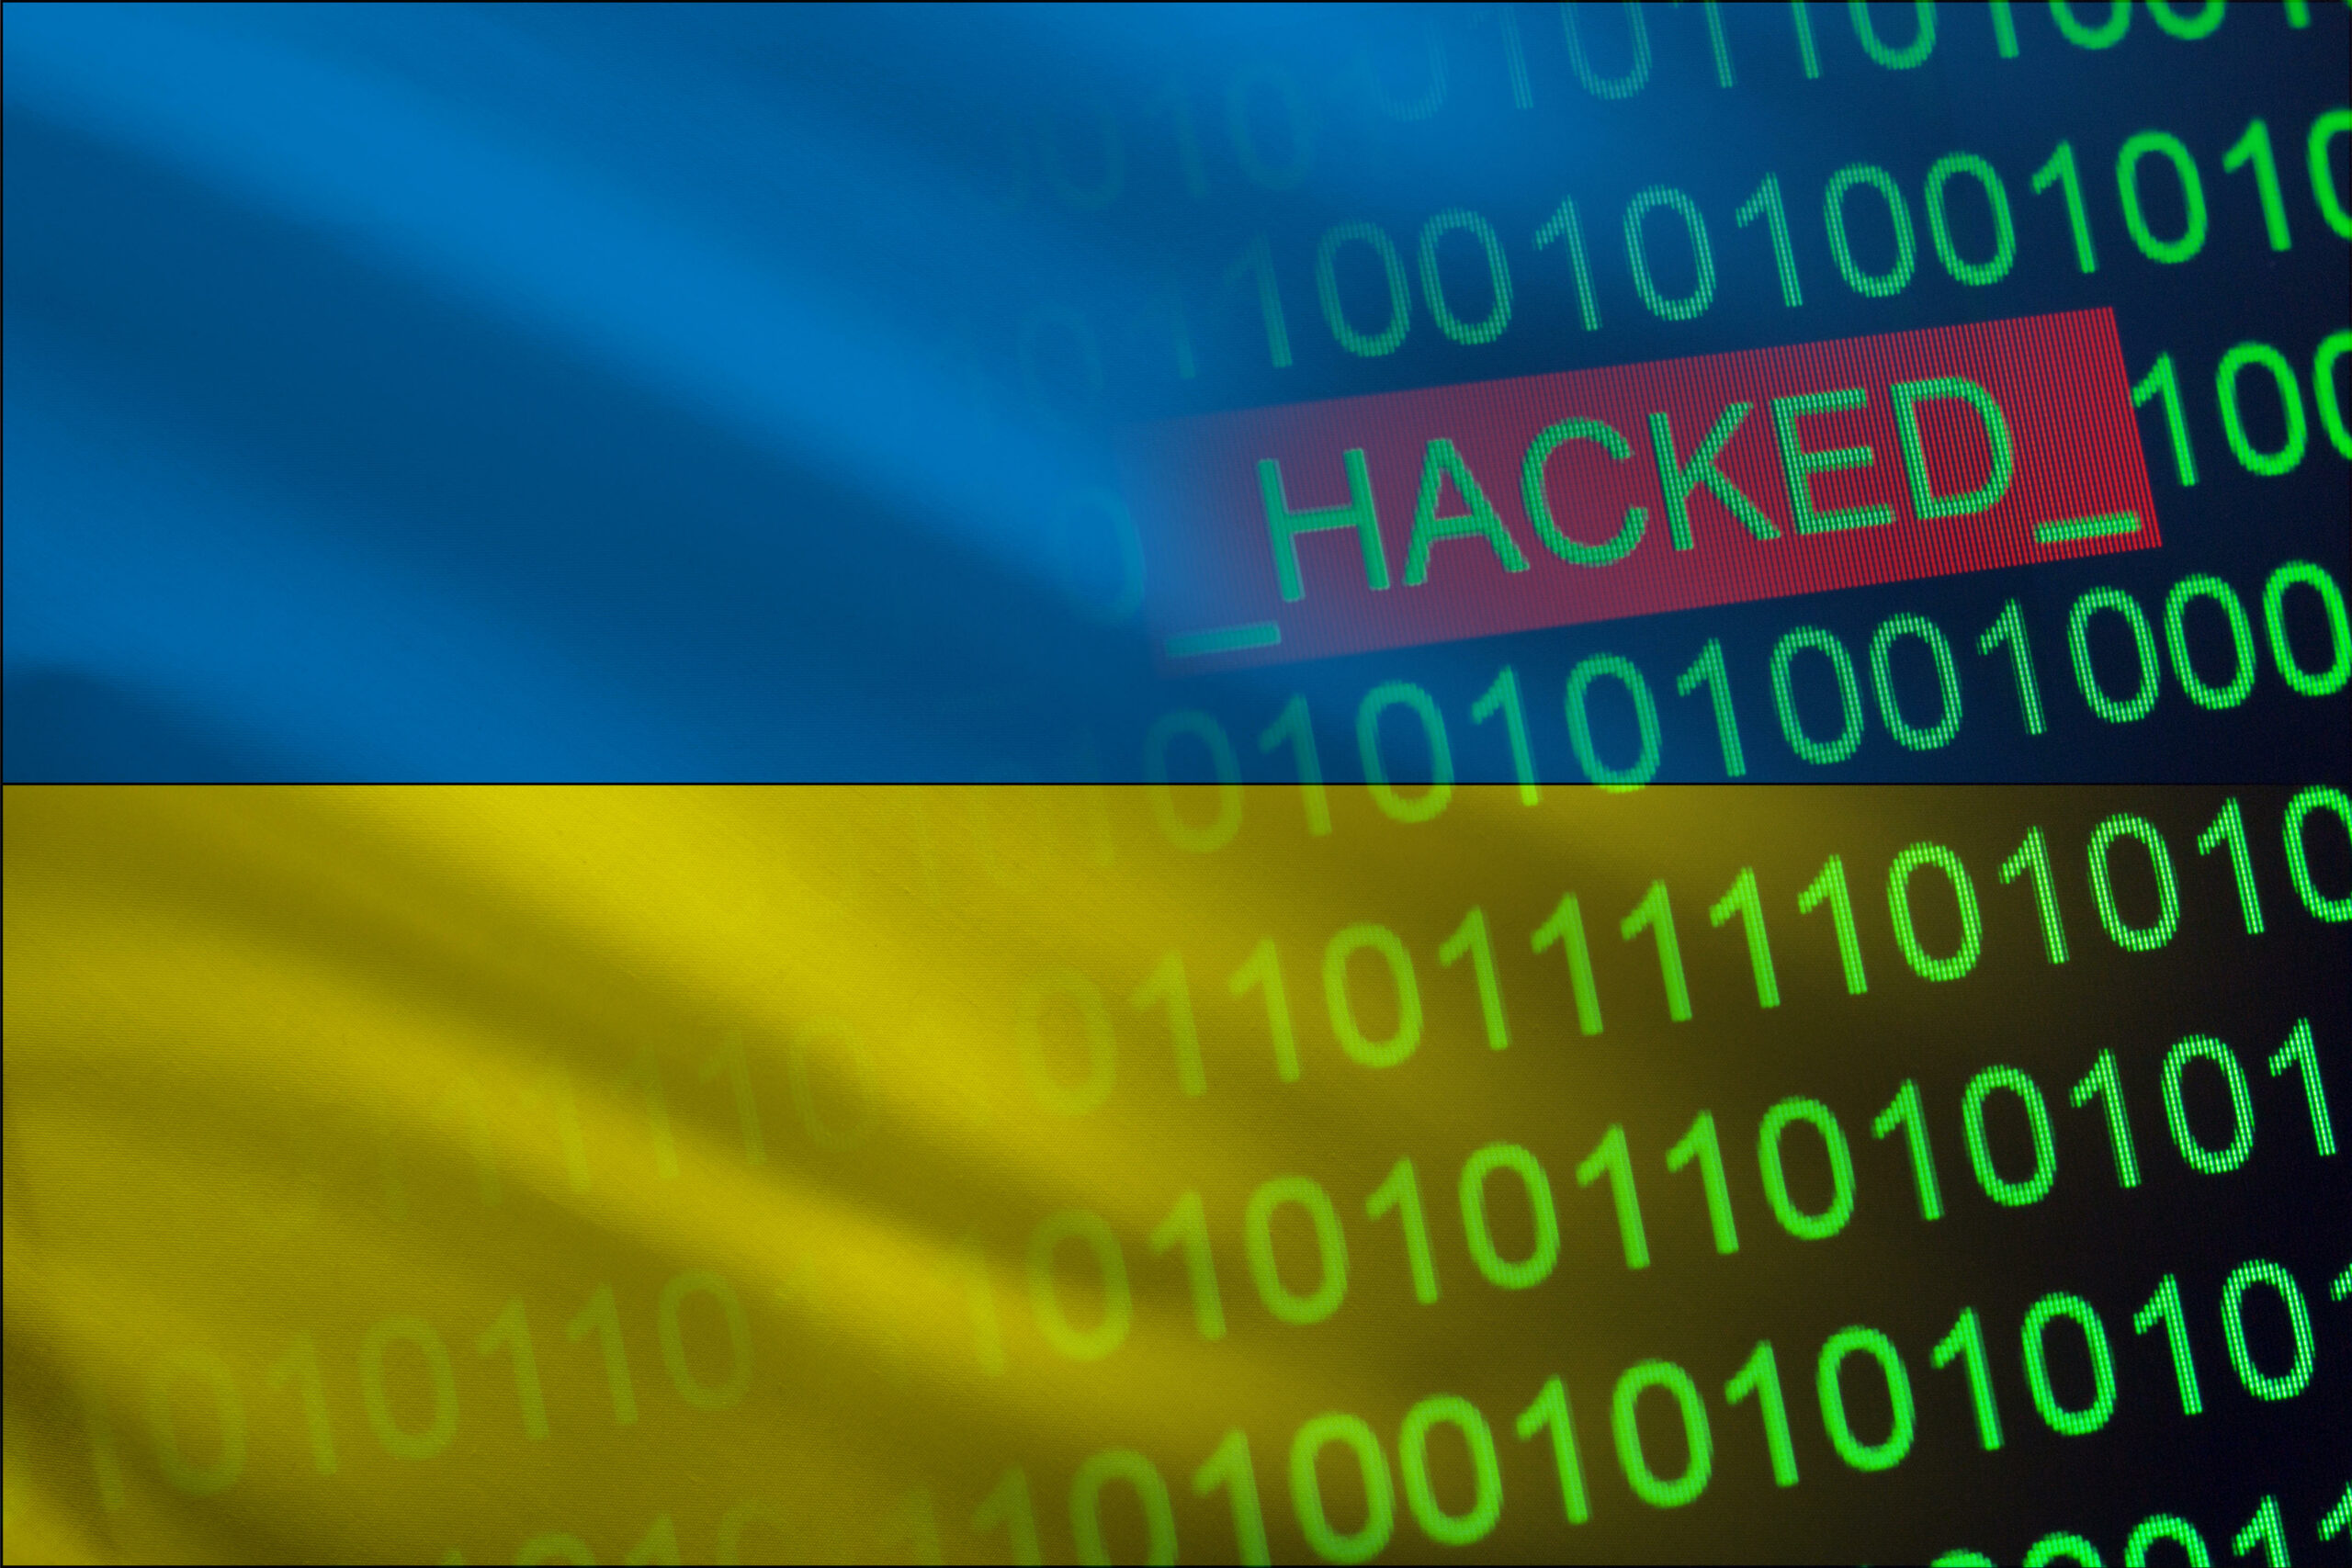 Empresa de abastecimento de água russa hackeada em retaliação ao ataque à Kyivstar